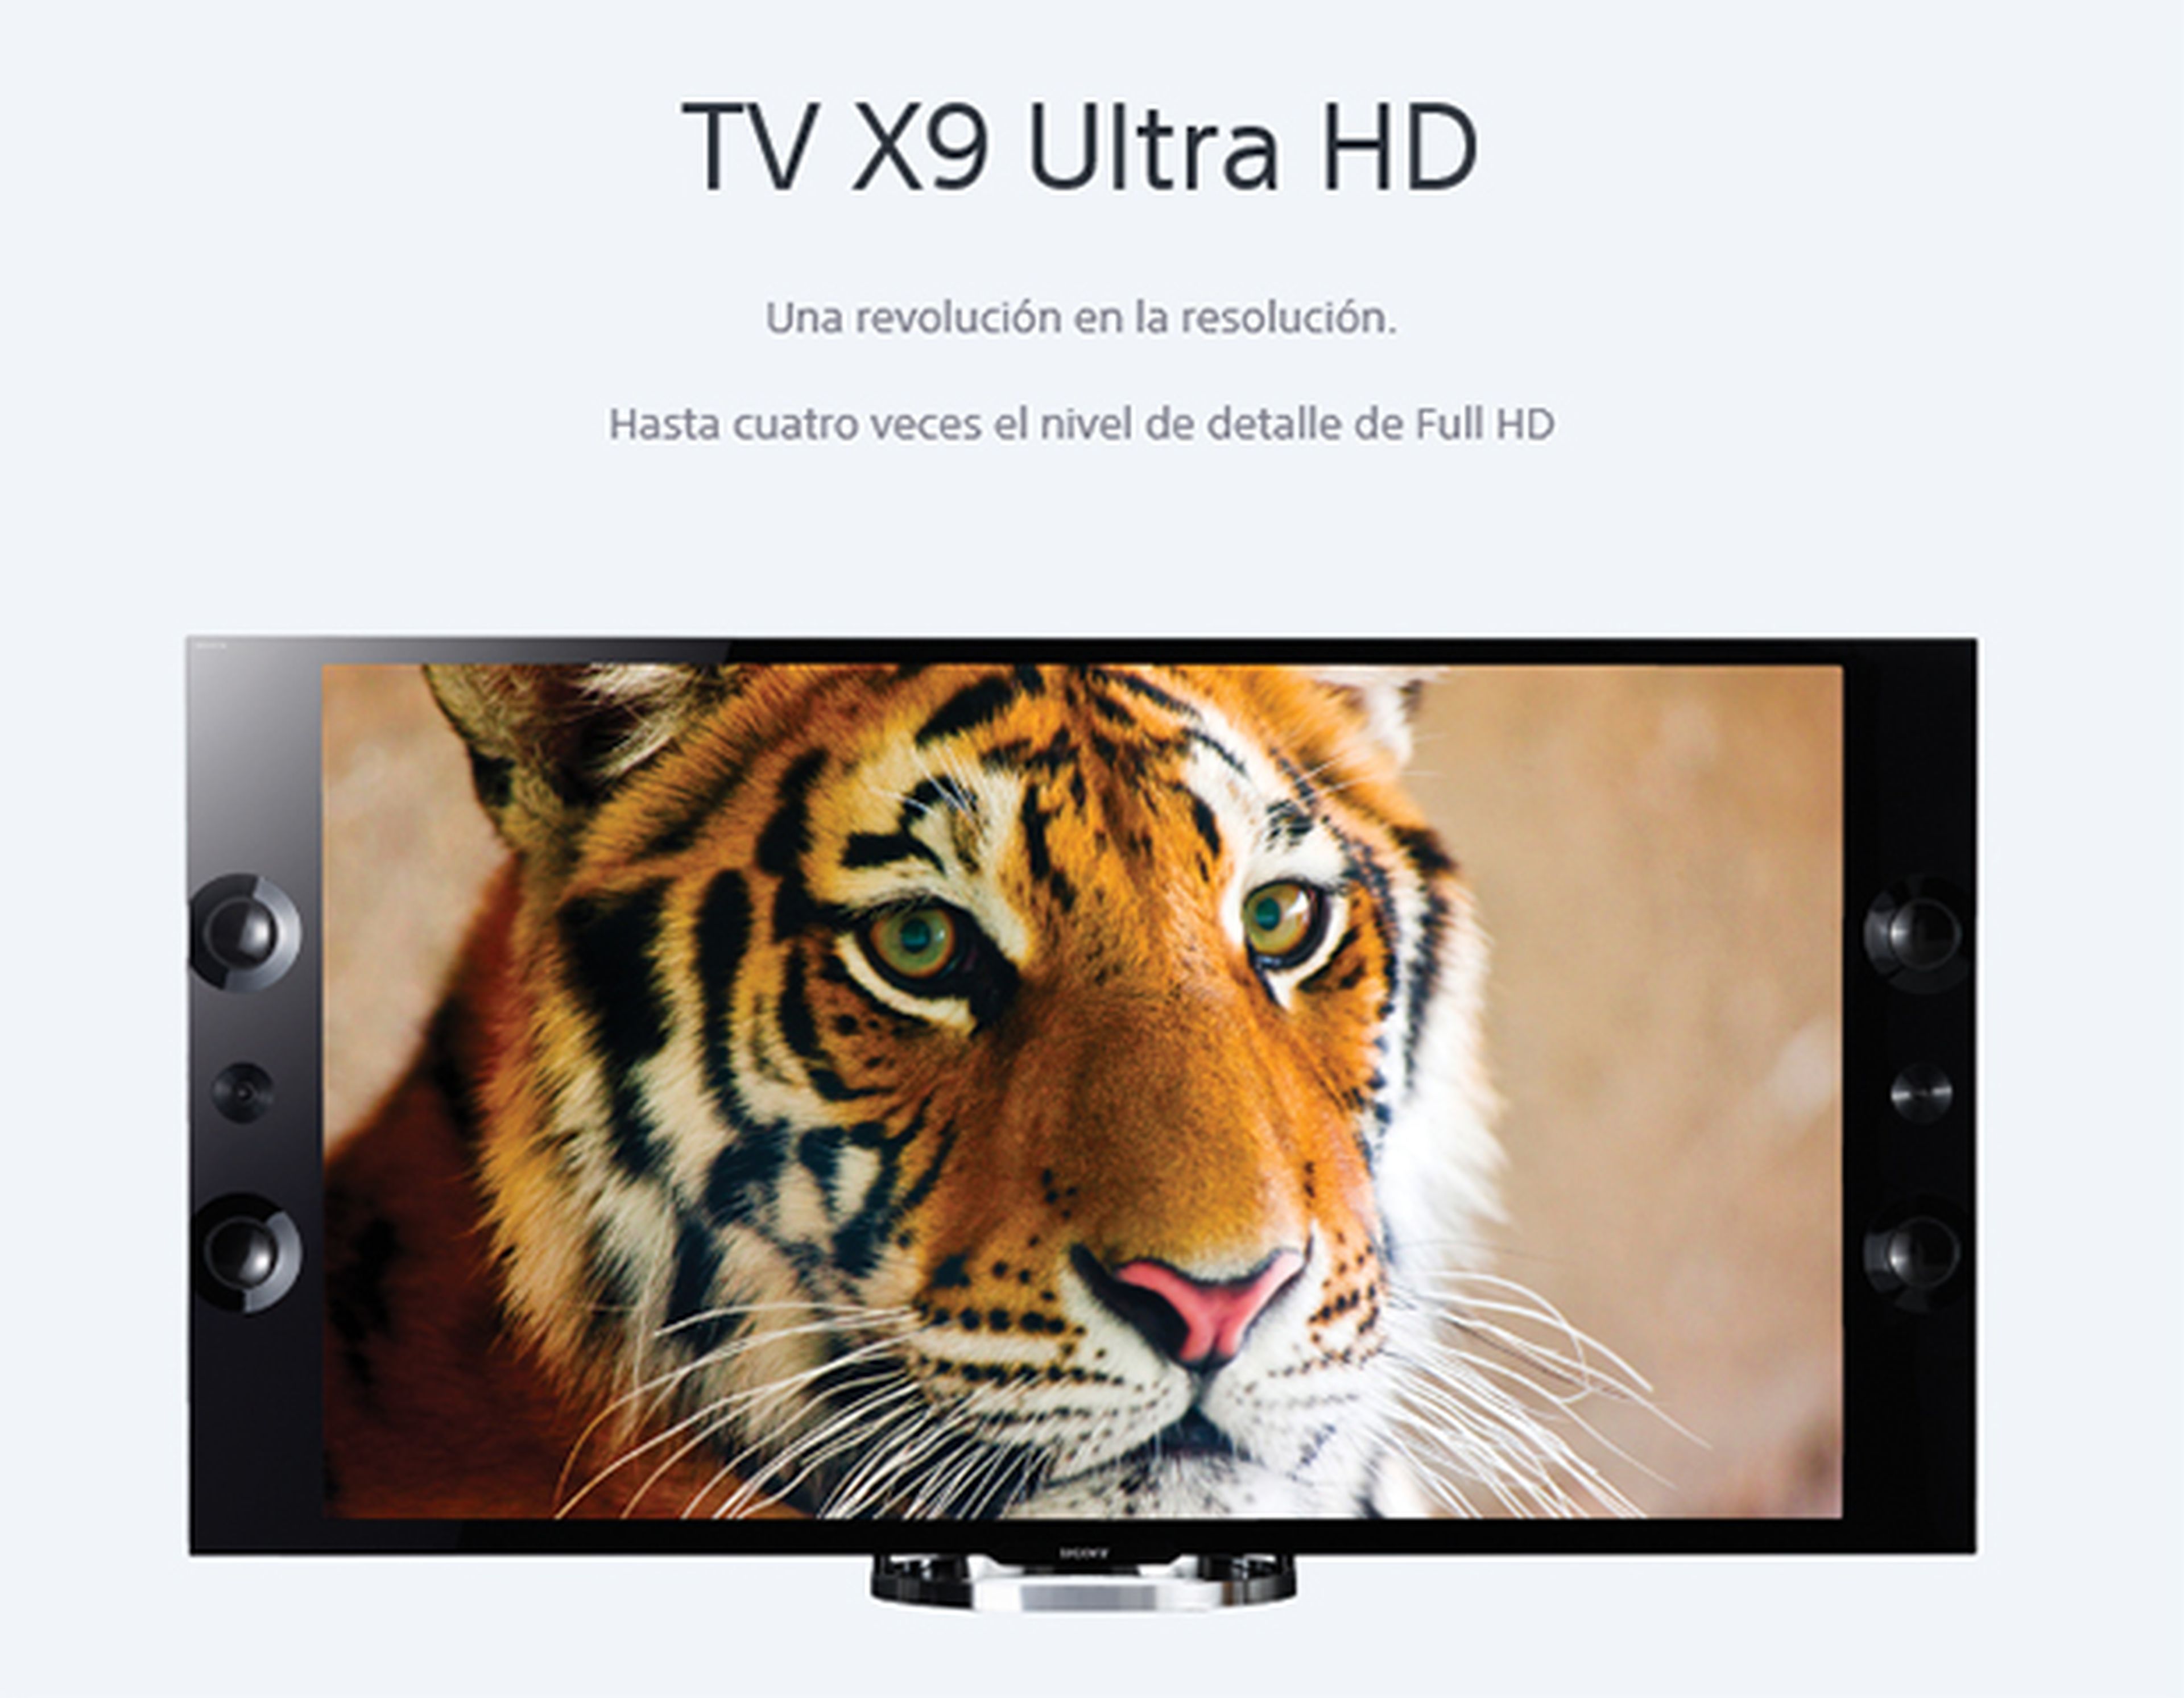 TV X9 Ultra HD sony